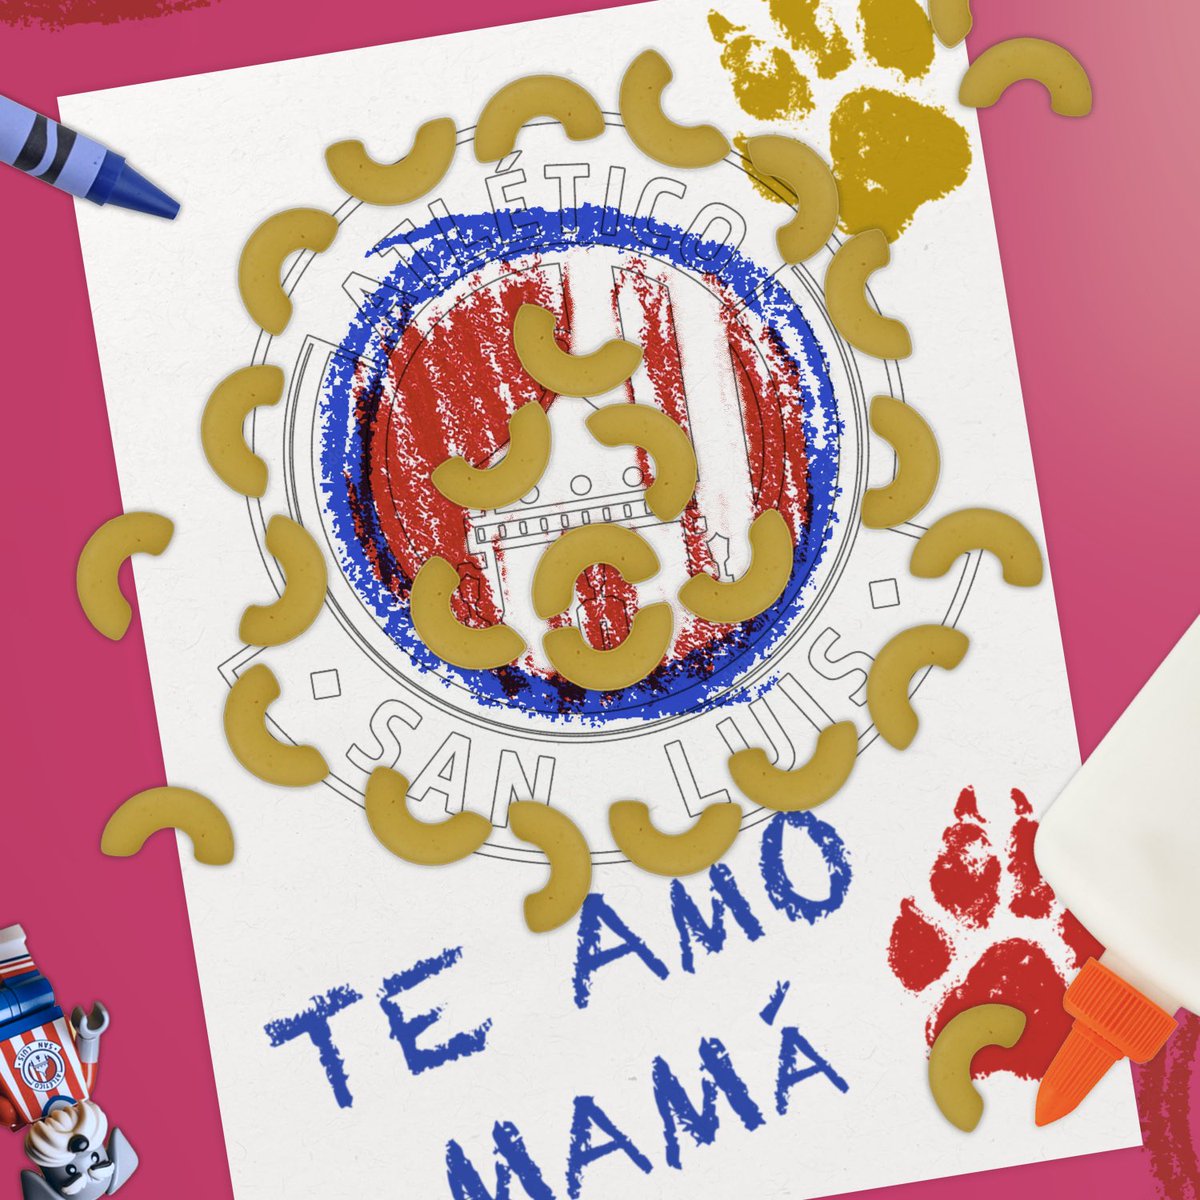 ¡Te amo, mamá! ¡Feliz día! 🥹

¿Qué tal el regalo de Tunita y Lucho? 🙊

#ConAlmaPotosina